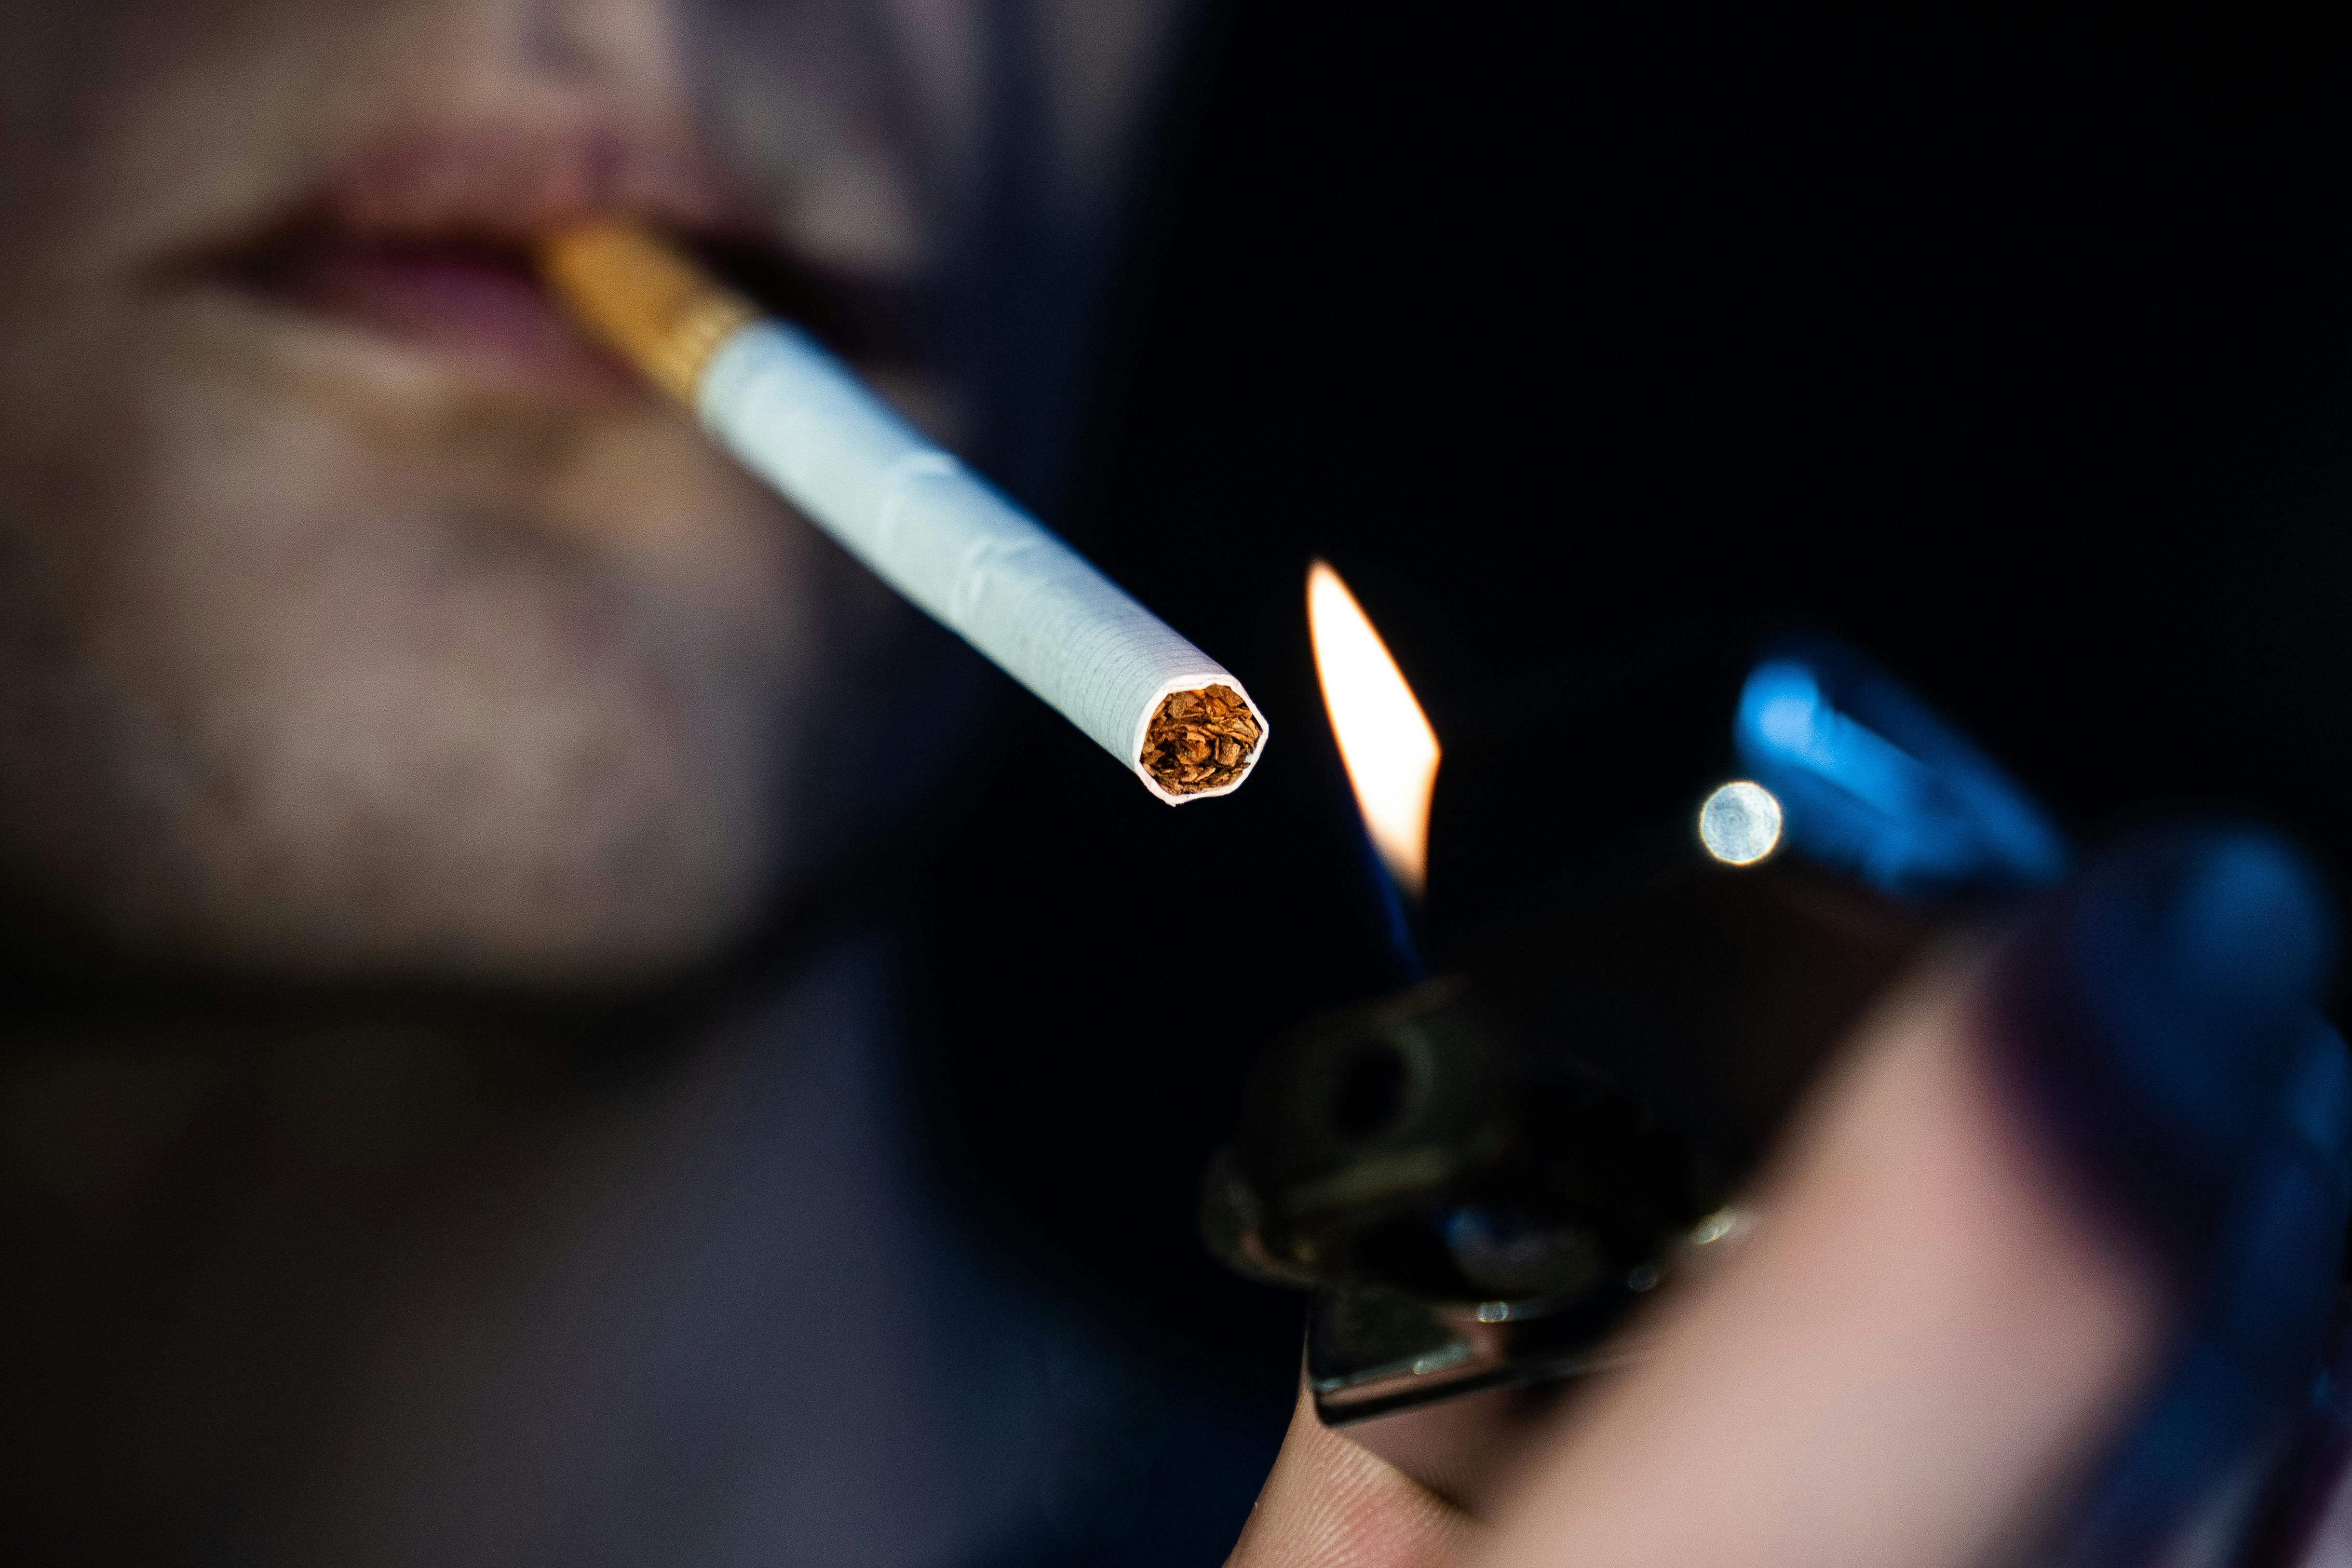 Antallet af rygere i Danmark er uændret i periode 2020-2022. Men andelen af de 15-29-årige, der brugte røgfrie nikotinprodukter steg fra 10 til 14 procent. Det viser en ny rapport fra Sundhedsstyrelsen.